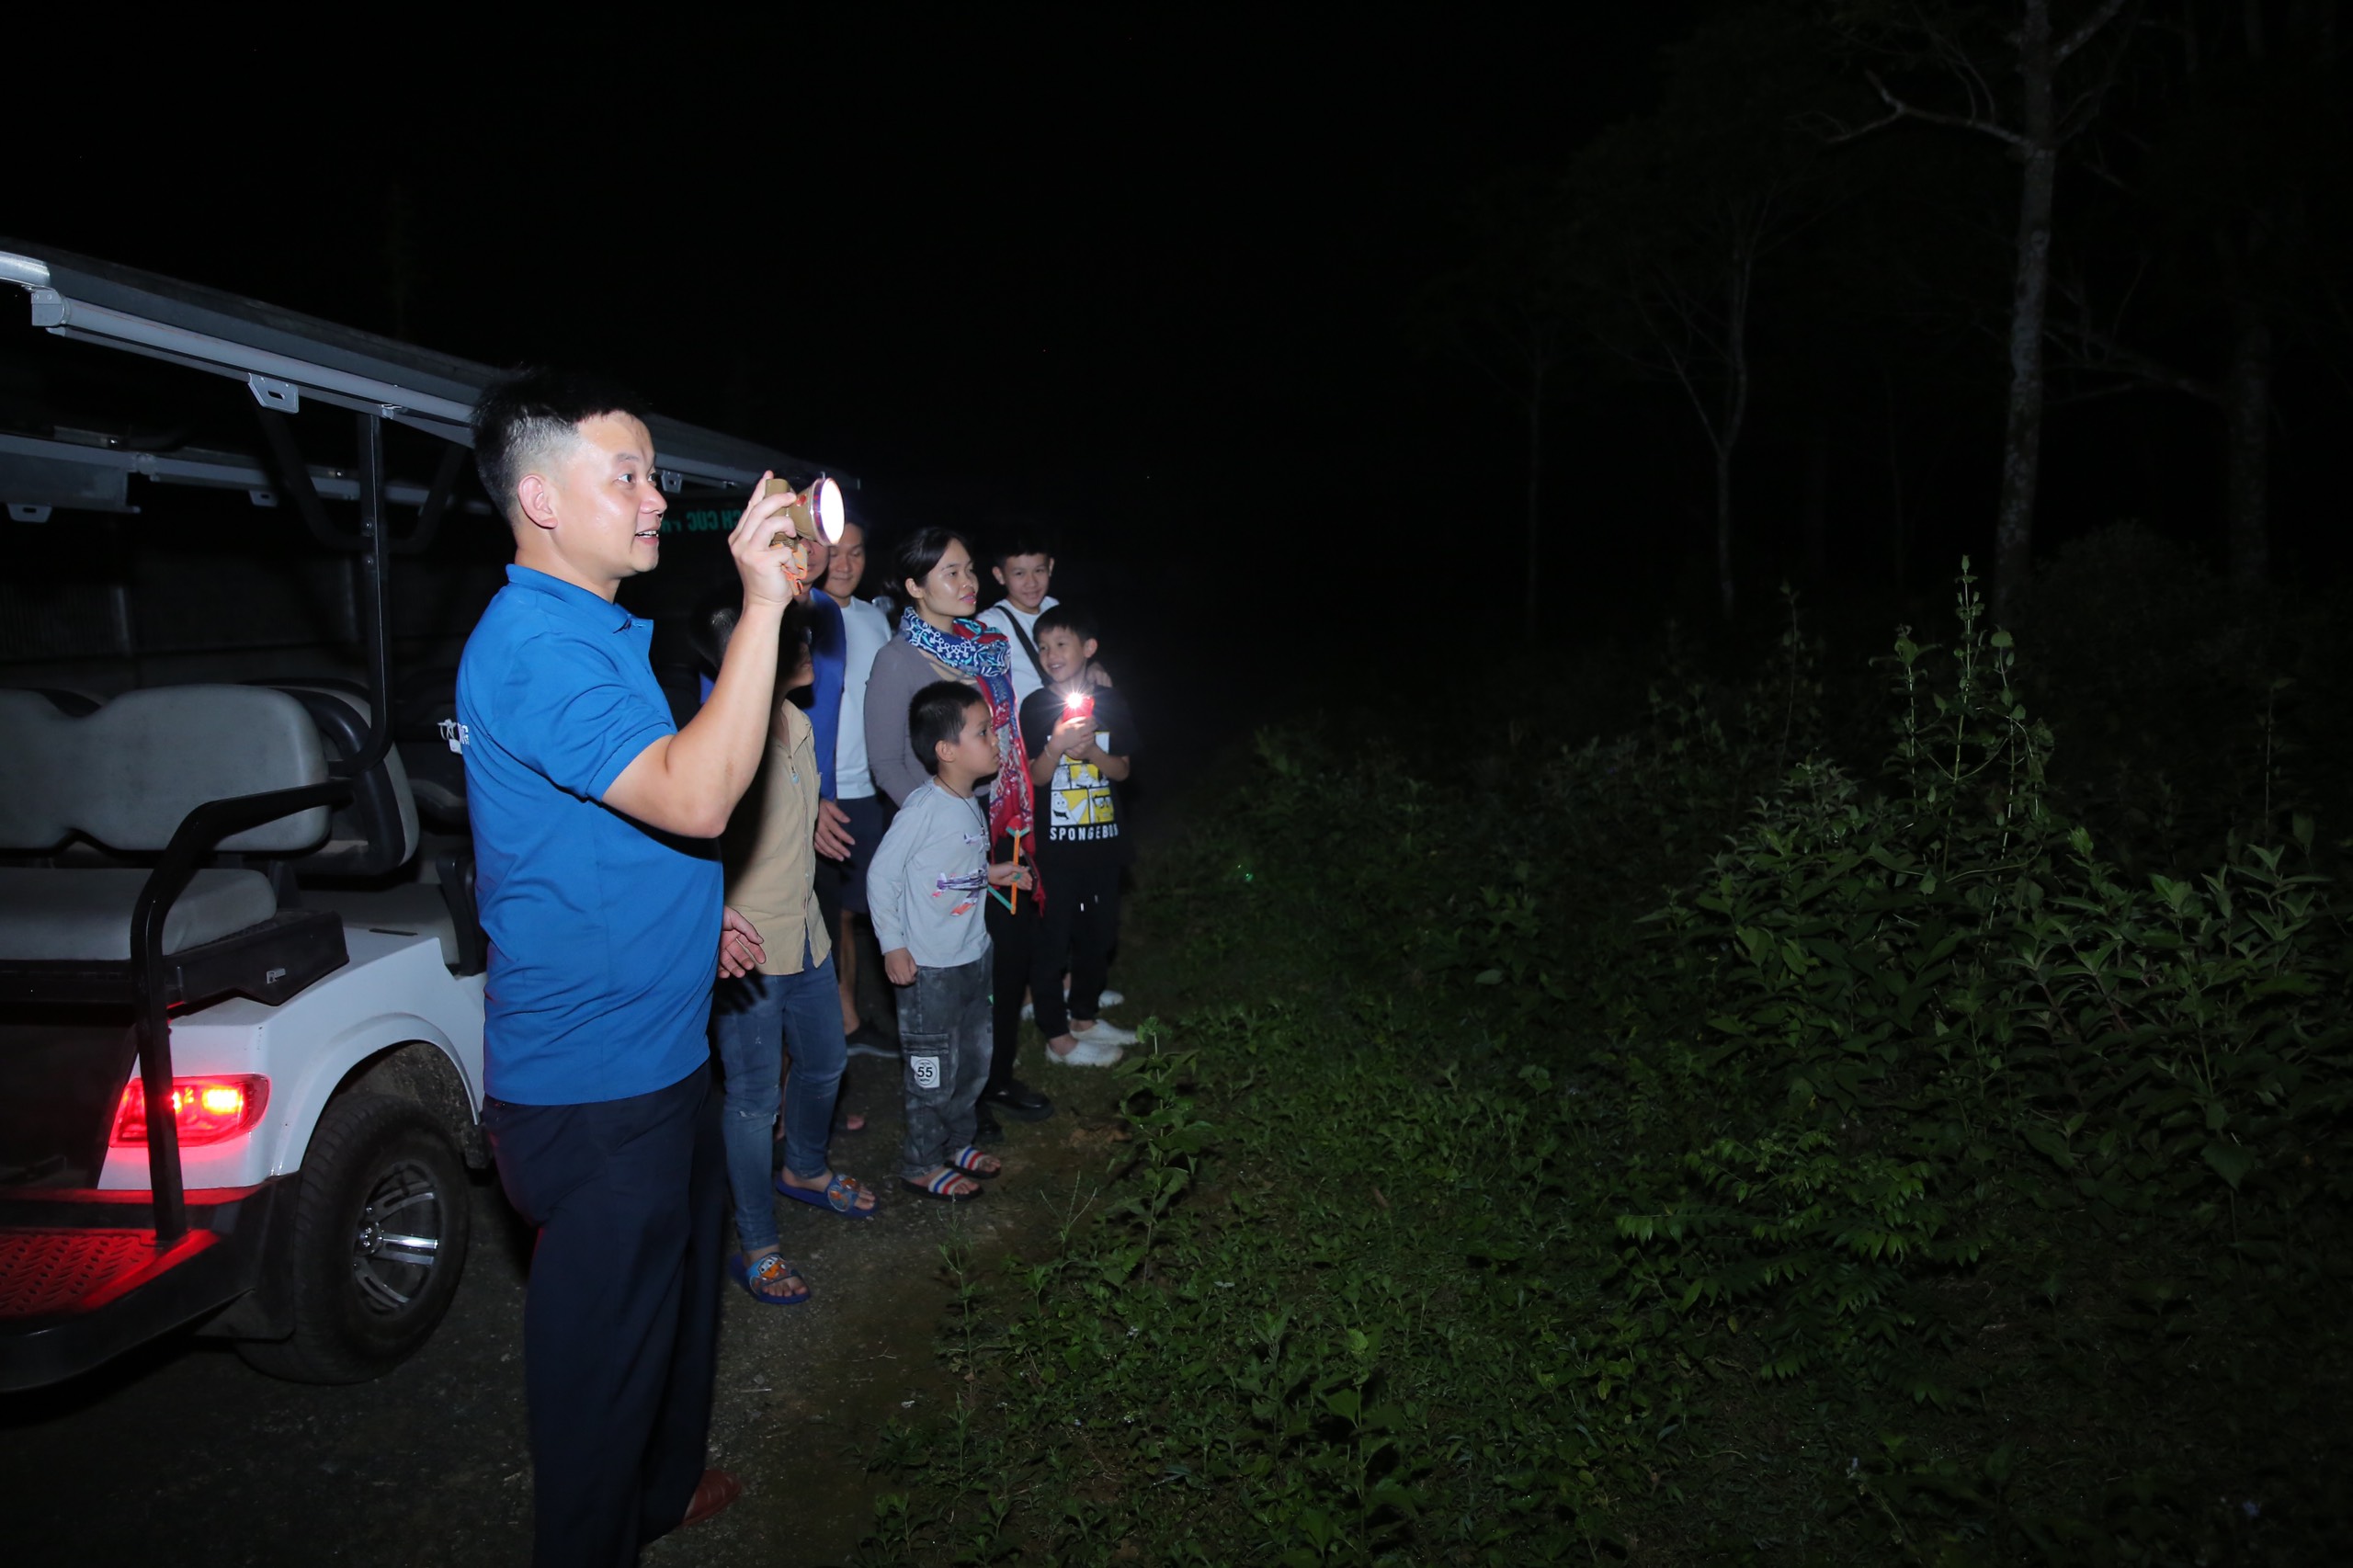 Tour đêm ngắm trực tiếp động vật hoang dã kiếm ăn tại Vườn quốc gia Cúc Phương- Ảnh 4.